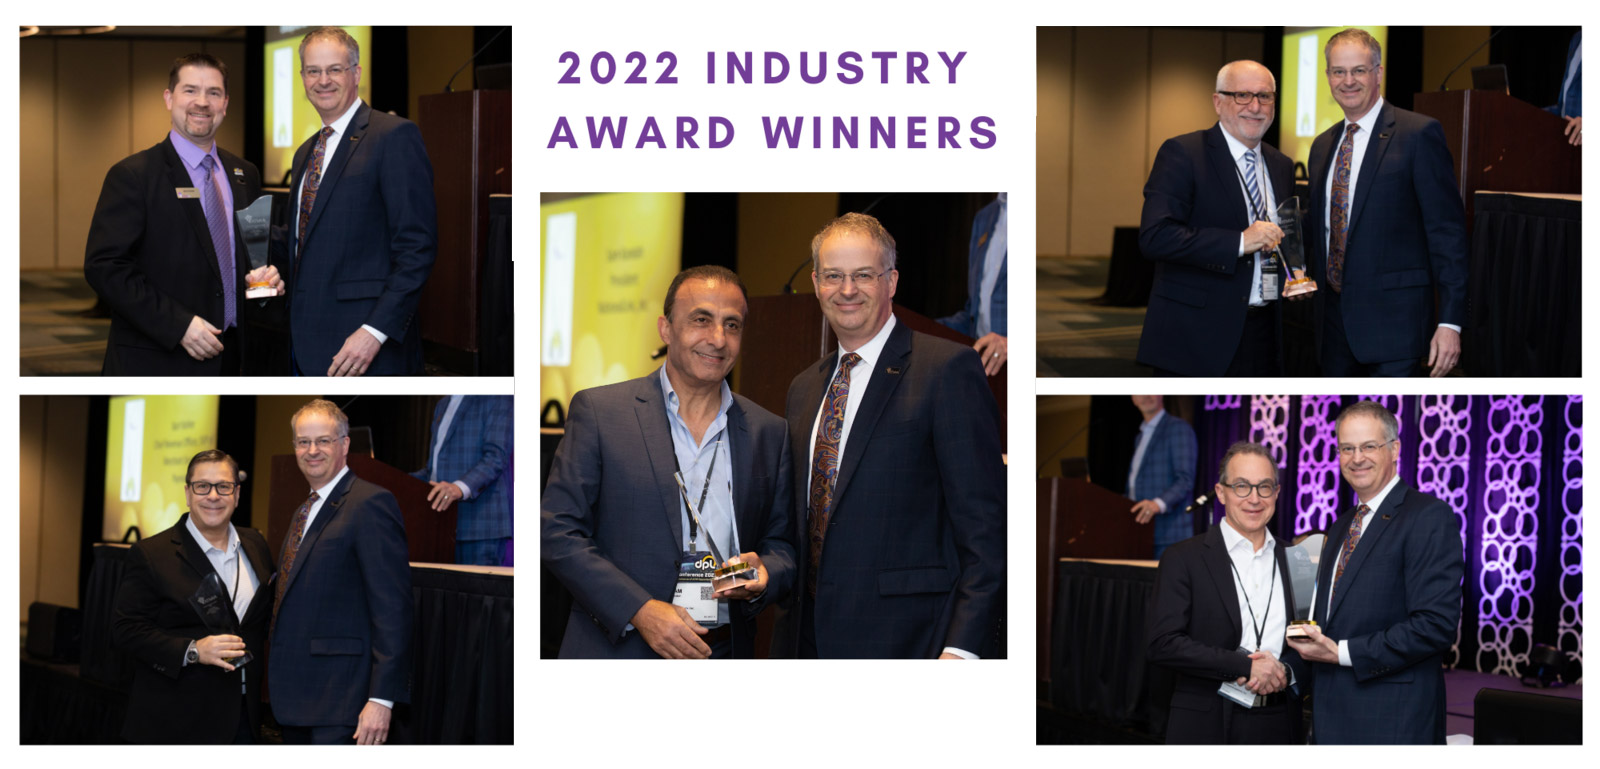 2022 Industry Award Winners